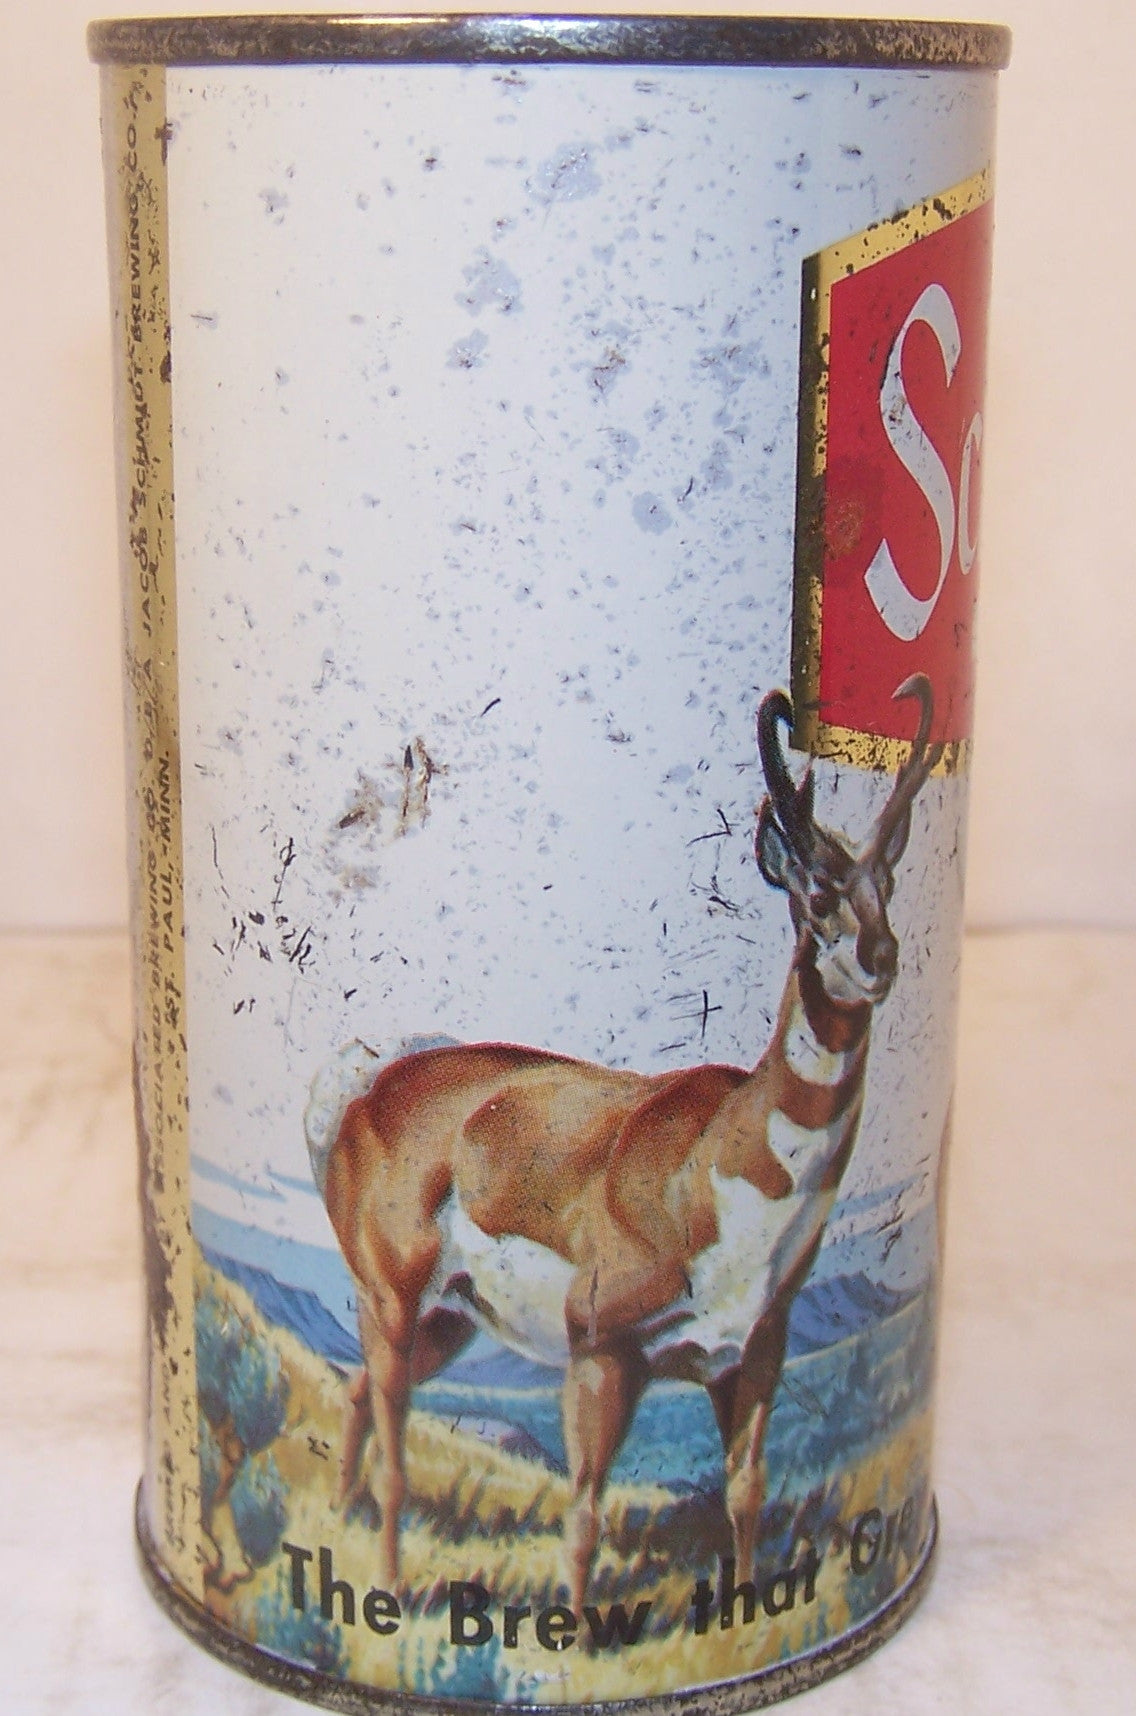 Schmidt Beer (Antelope) USBC 130-31, Grade 1-/2+ Sold 1/20/15